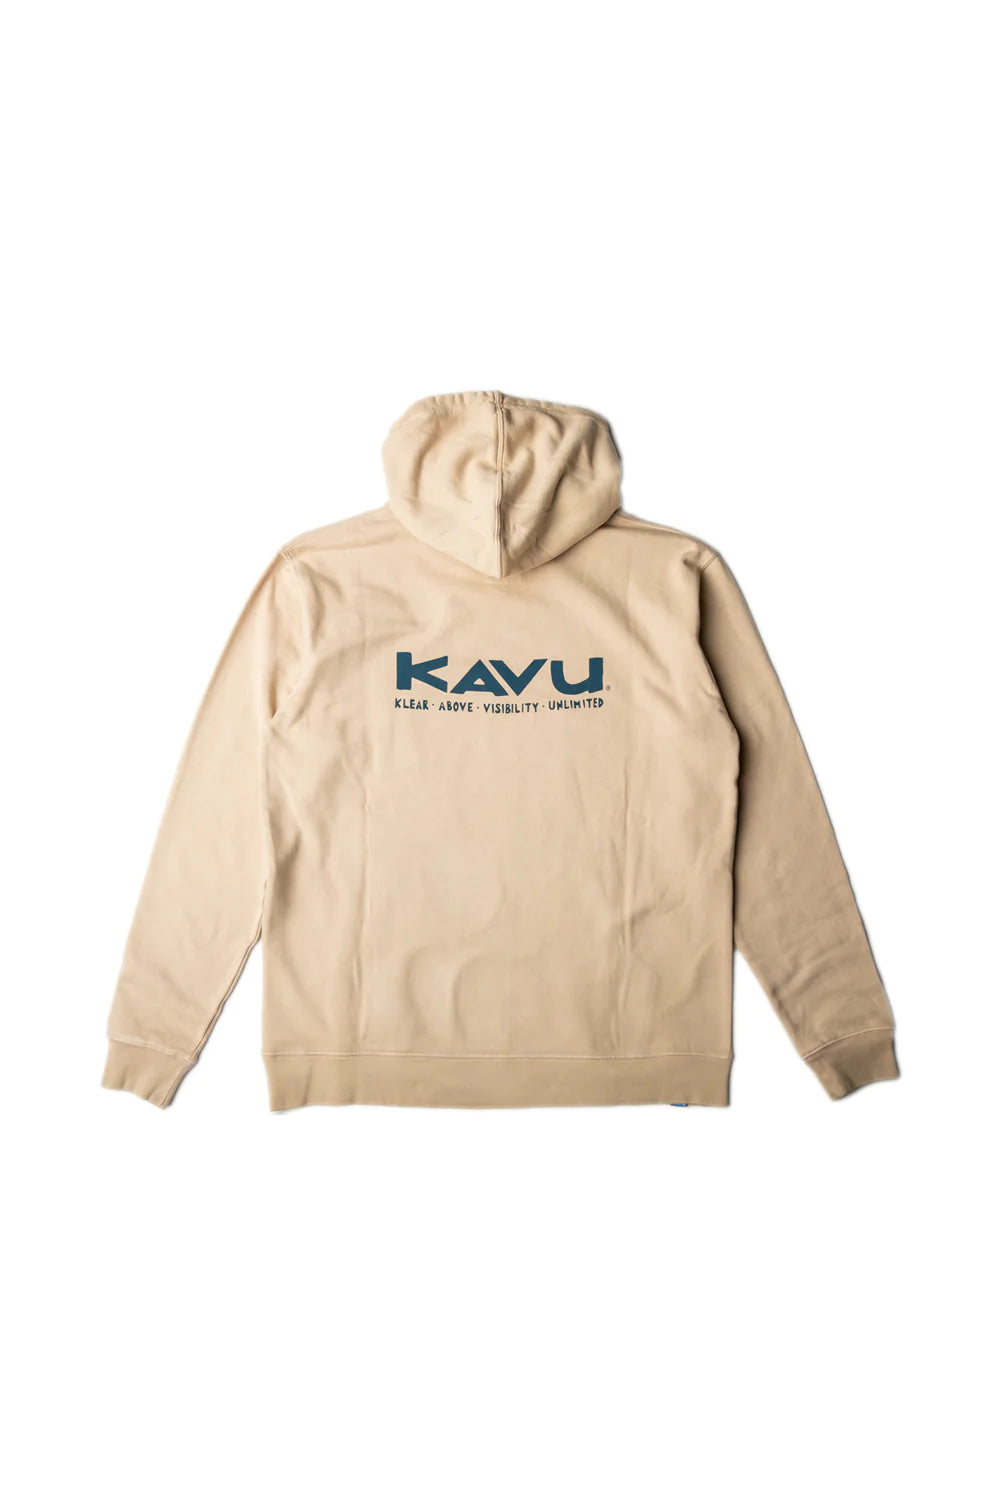 Kavu - Sweatshirt KAVU Core Hoodie Irish Cream